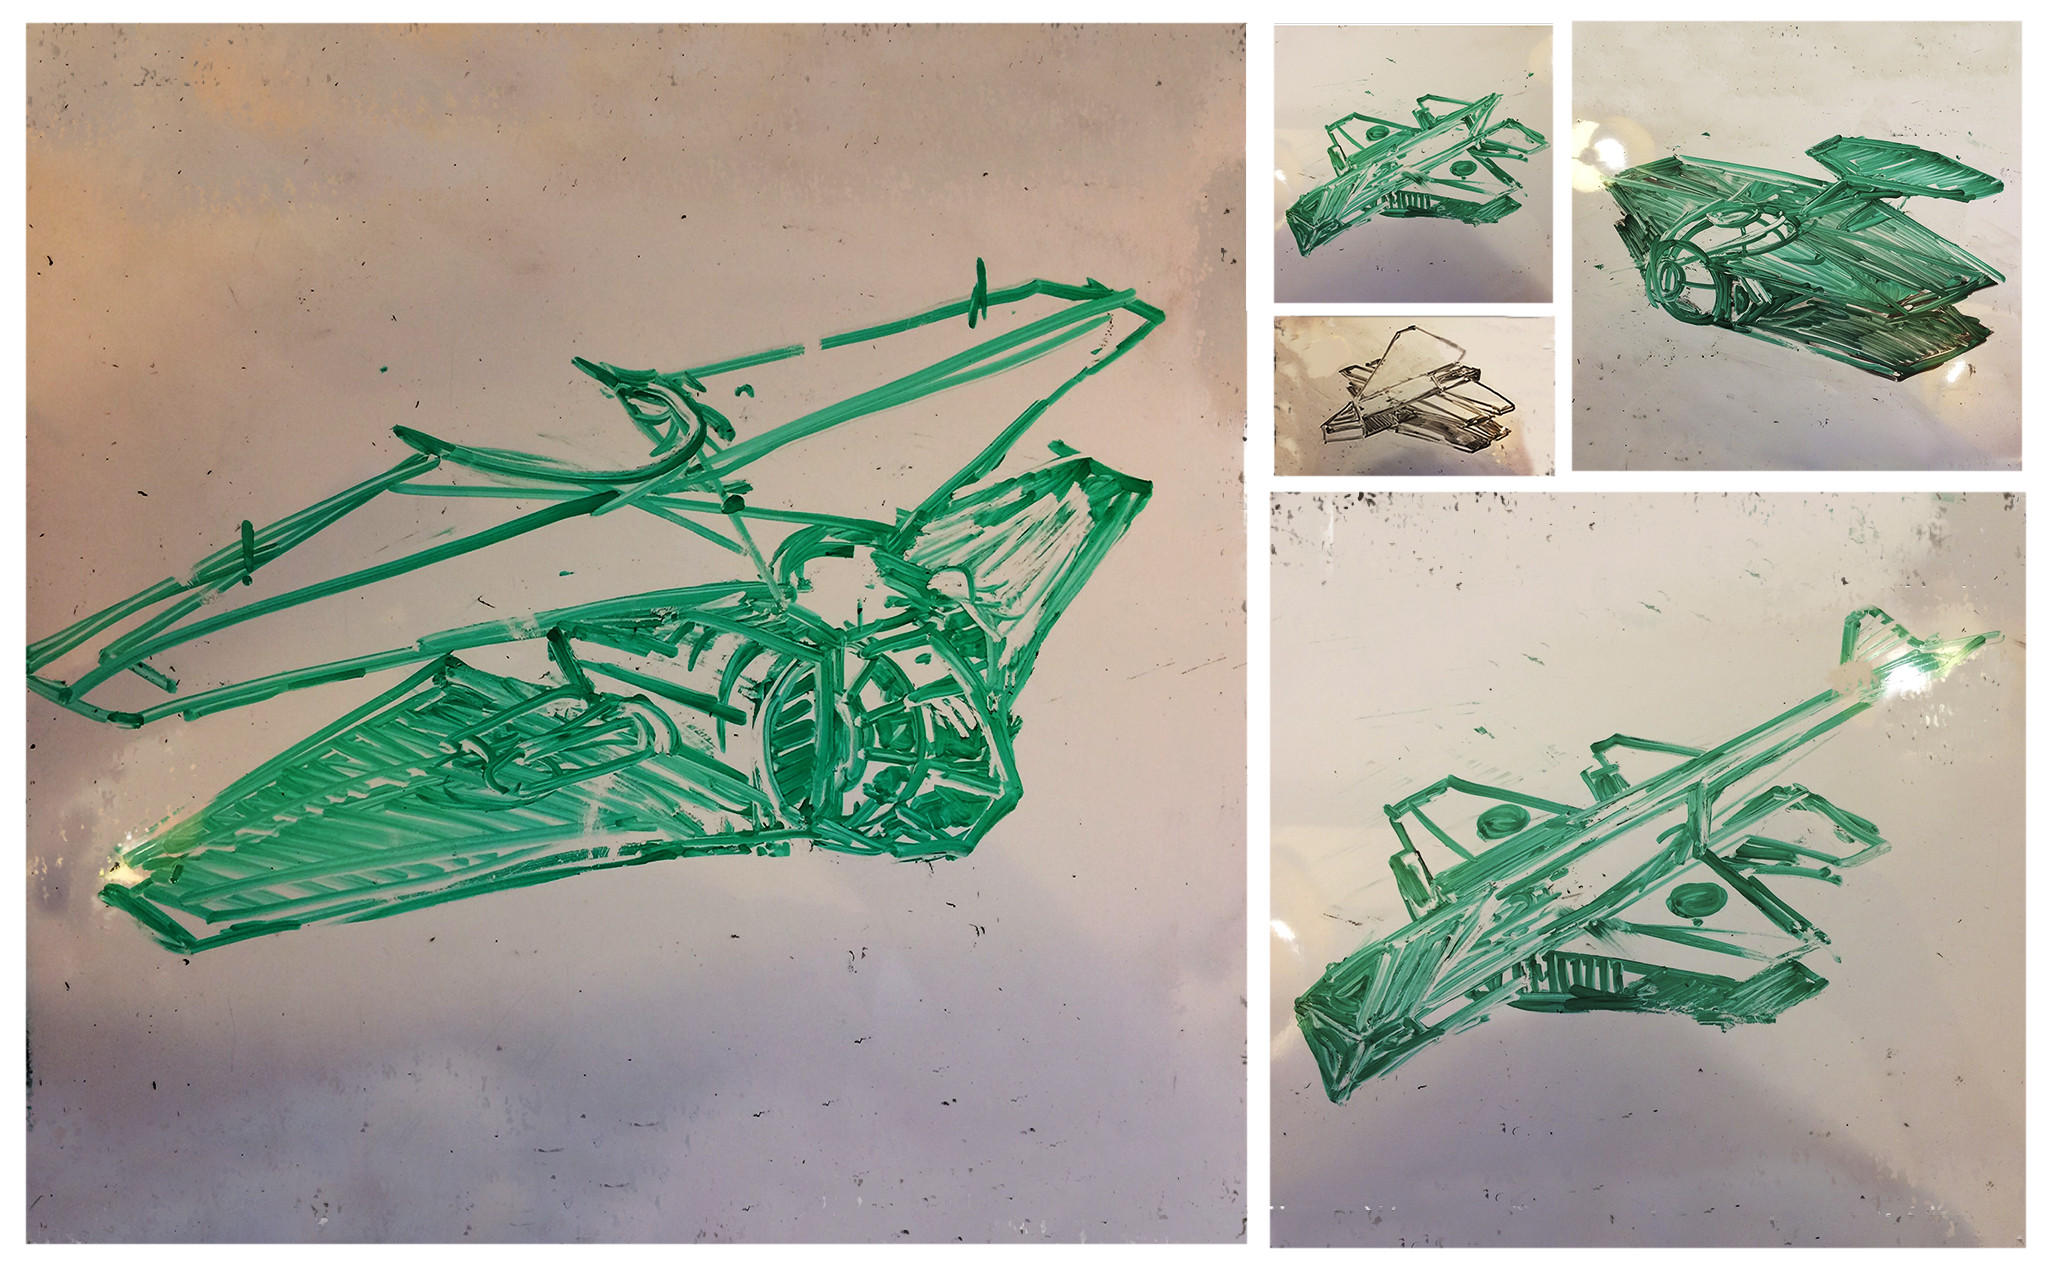 Xen's Aircraft whiteboard sketches 